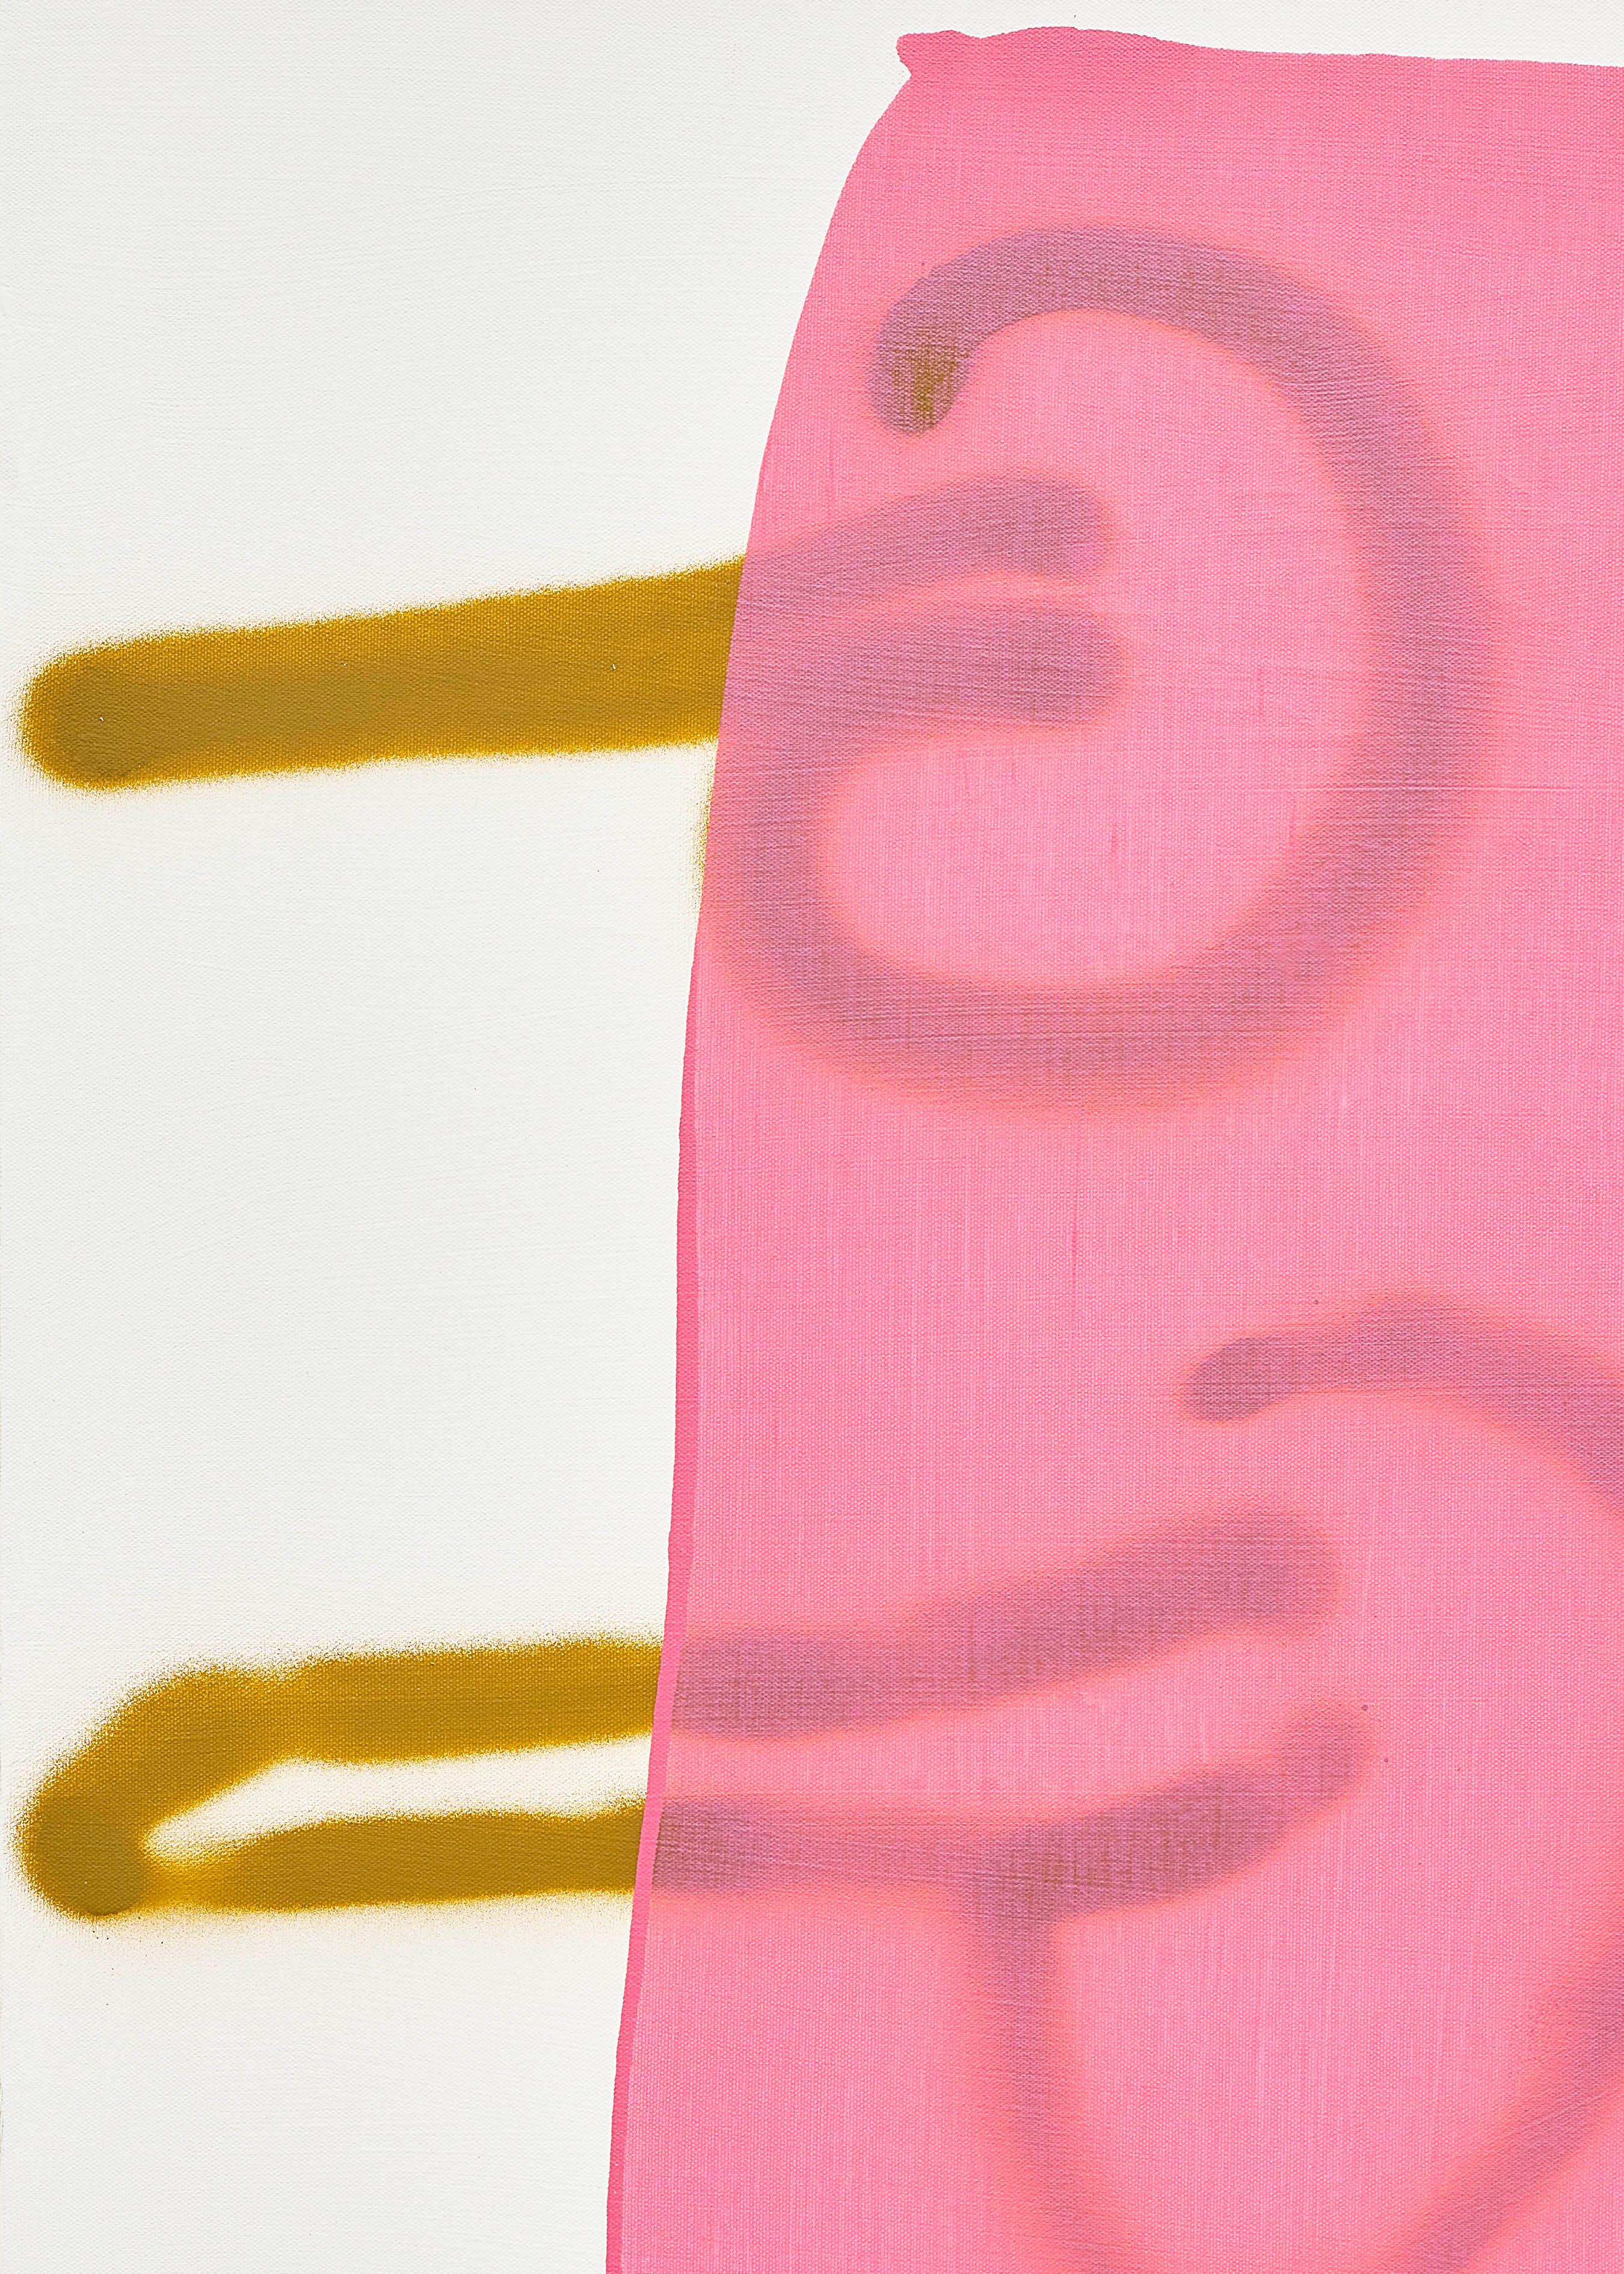 „“Misogyny“, zeitgenössische politische abstrakte Acryl- und Sprühfarbe in Rosa und Ockerfarbe (Pink), Abstract Painting, von Mel Reese